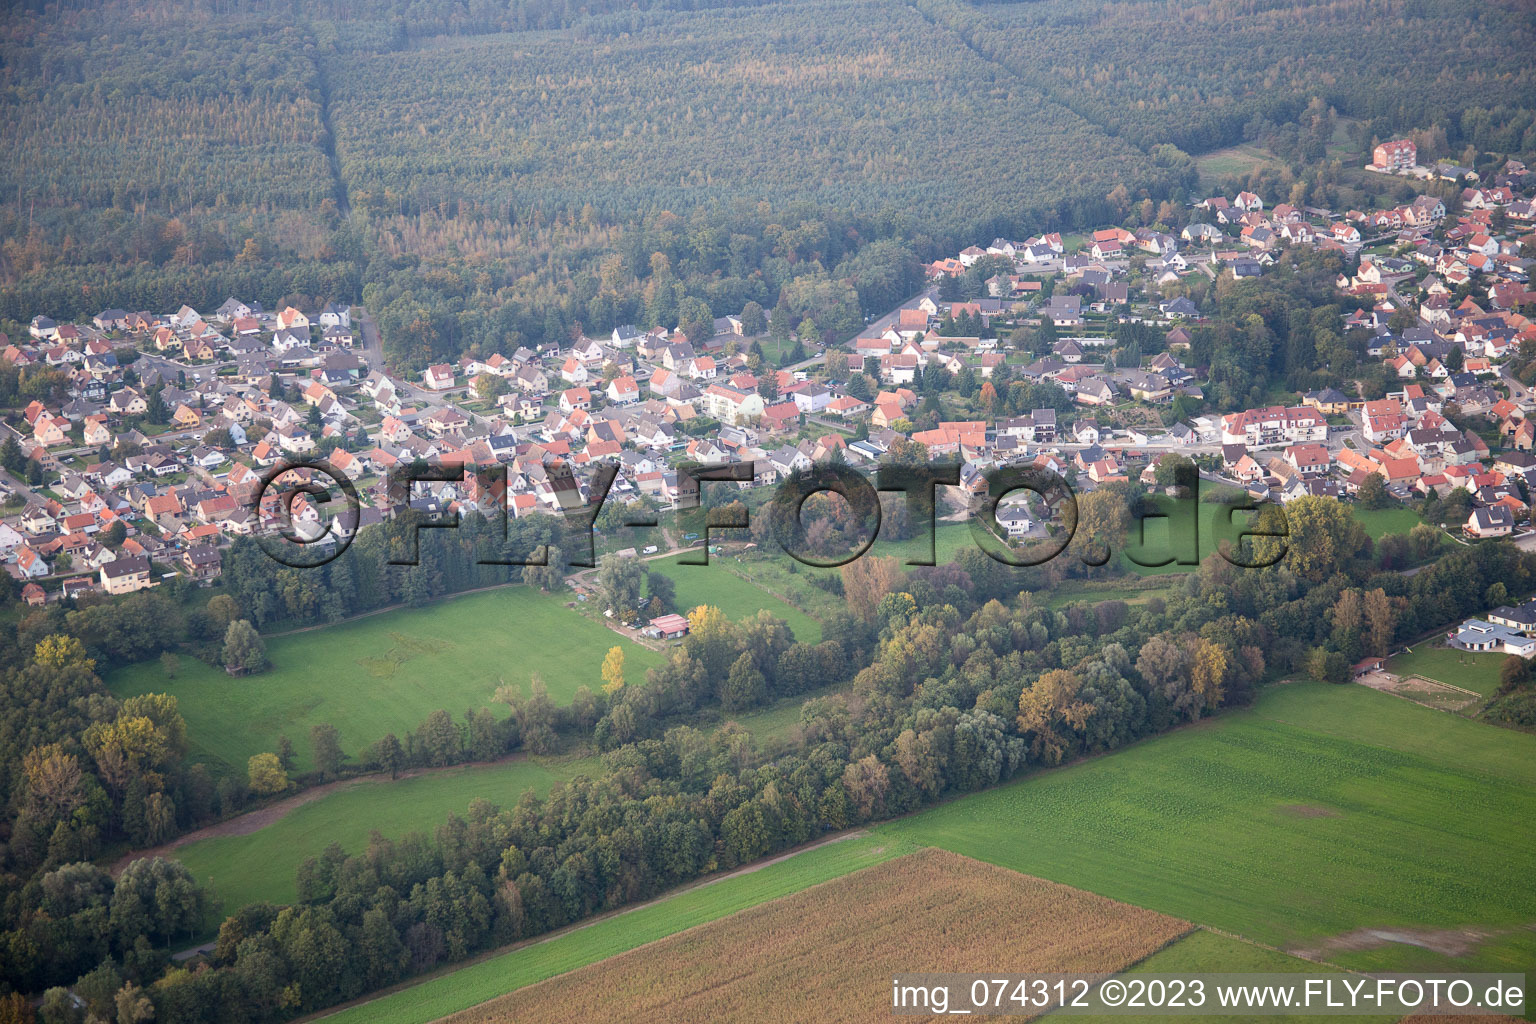 Aerial view of Schirrhein in the state Bas-Rhin, France